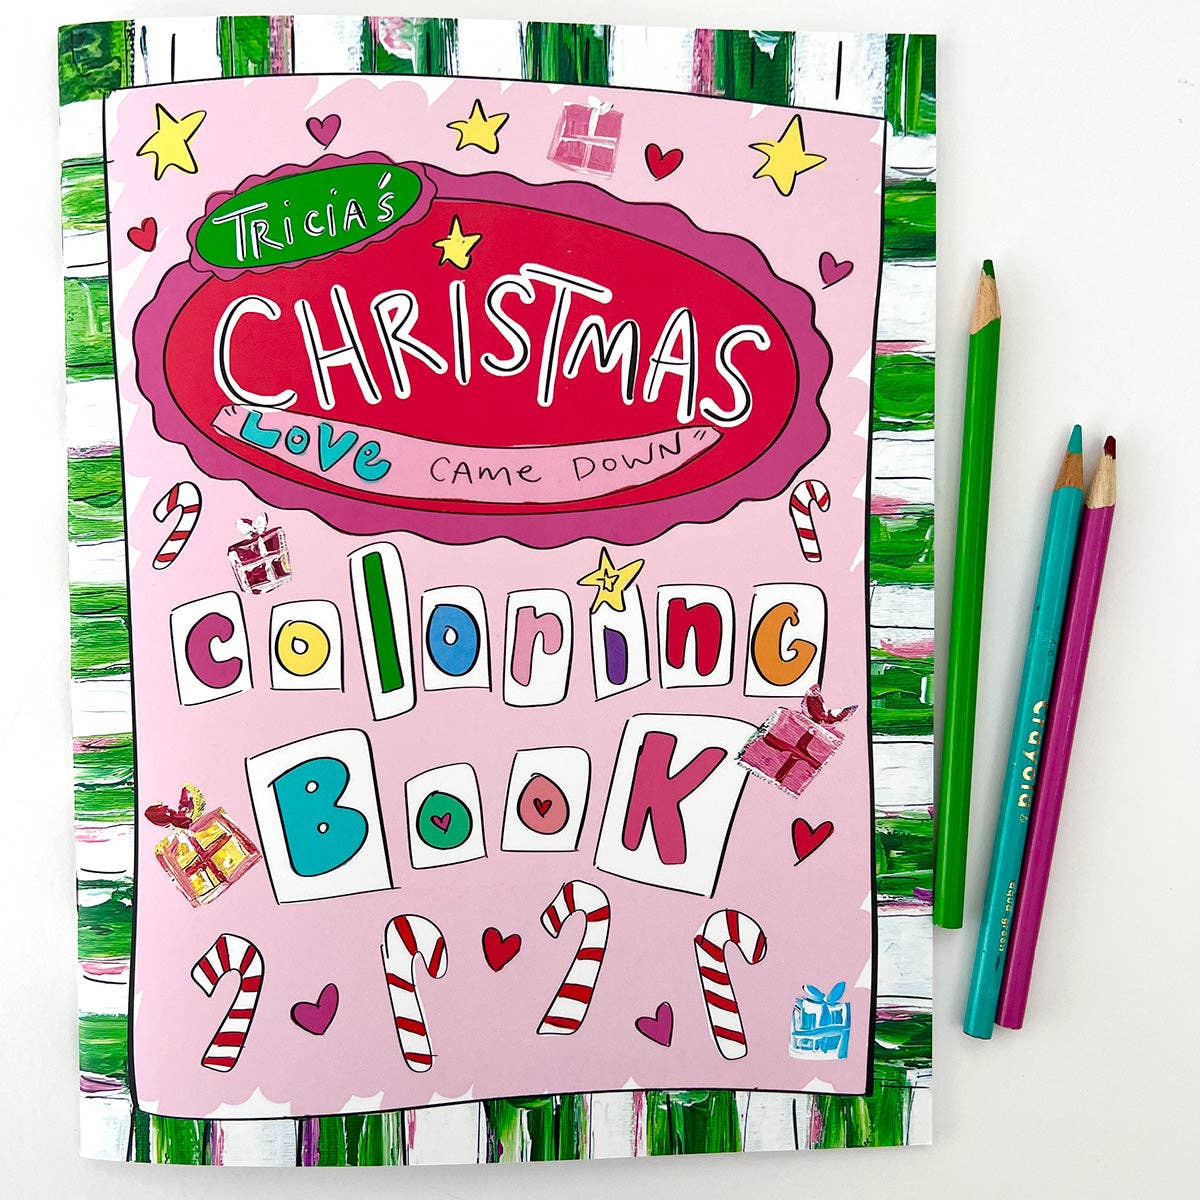 Happy Coloring Book Bundle – Shop Tricia Robinson Art